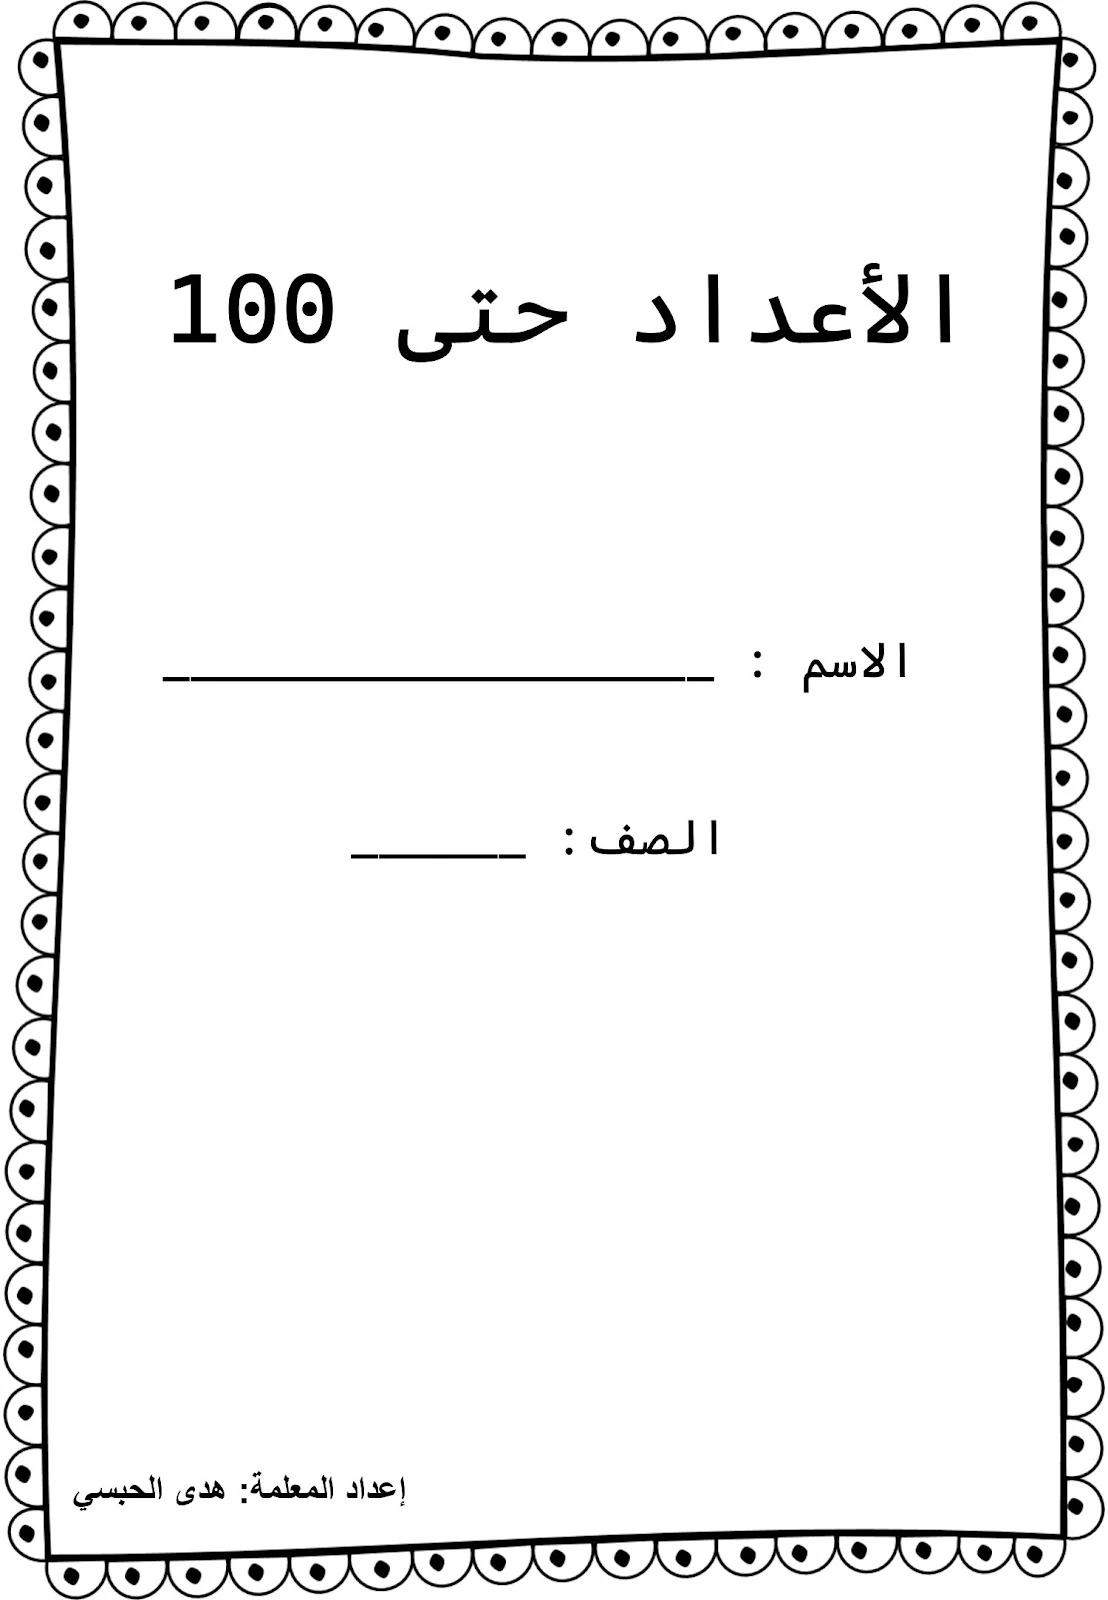 مذكرة ألارقام العربية إلى 120 برابط تحميل مجاني مباشر